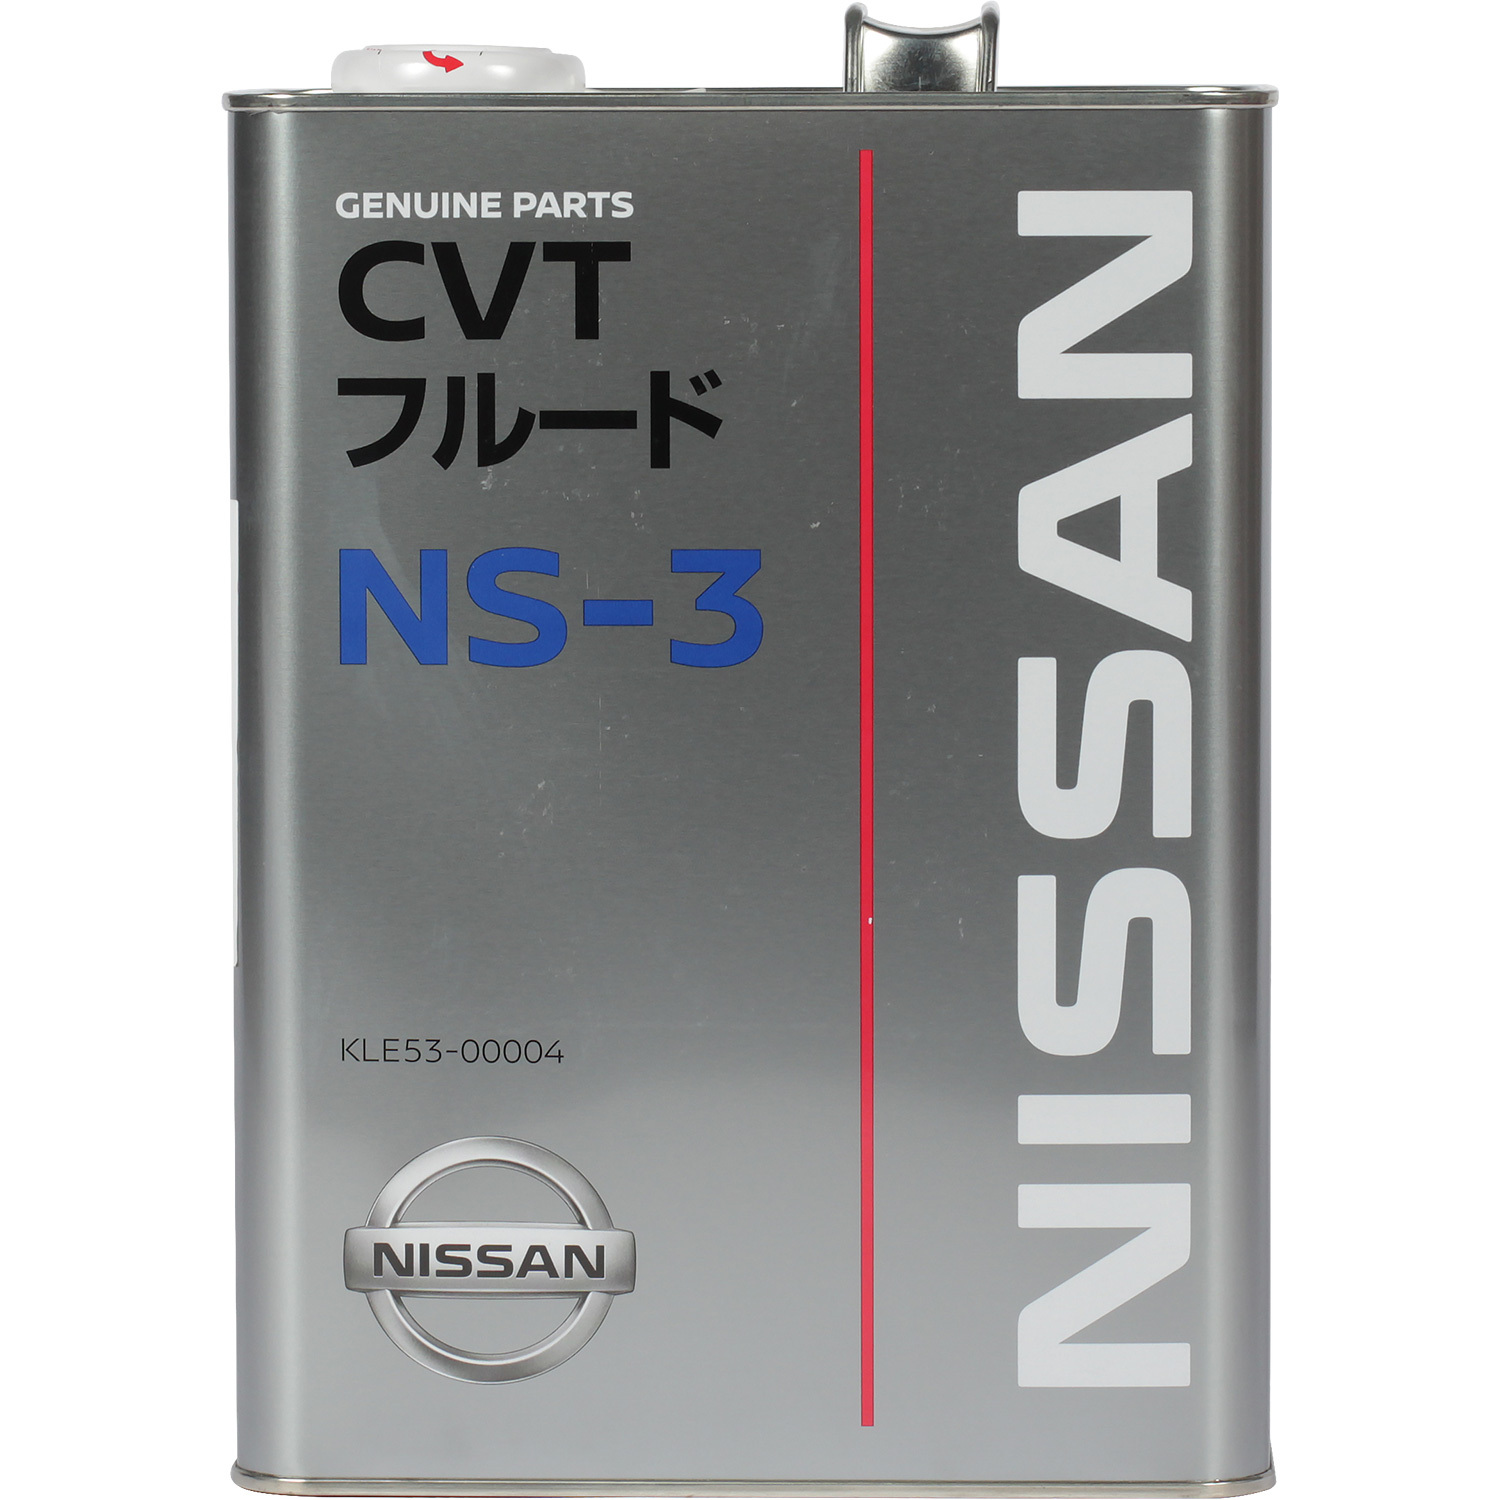 Nissan Масло трансмиссионное NISSAN CVT FLUID NS-3 4л jf011e re0f10e трансмиссия cvt шаговый двигатель для nissan dodge altima33435j